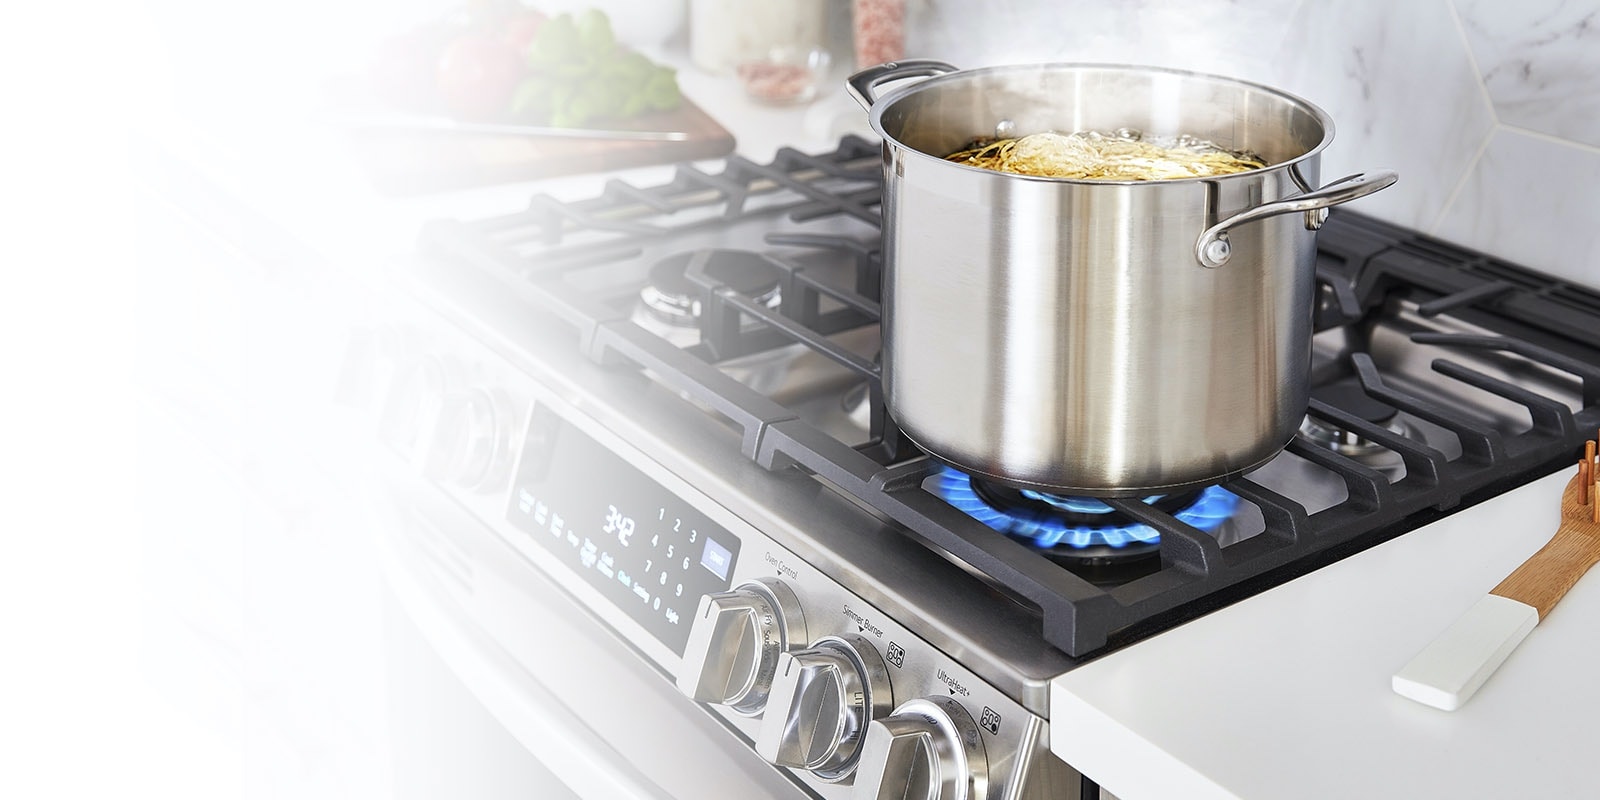 Get LG's Fastest Boiling Burner and Get Dinner Done1